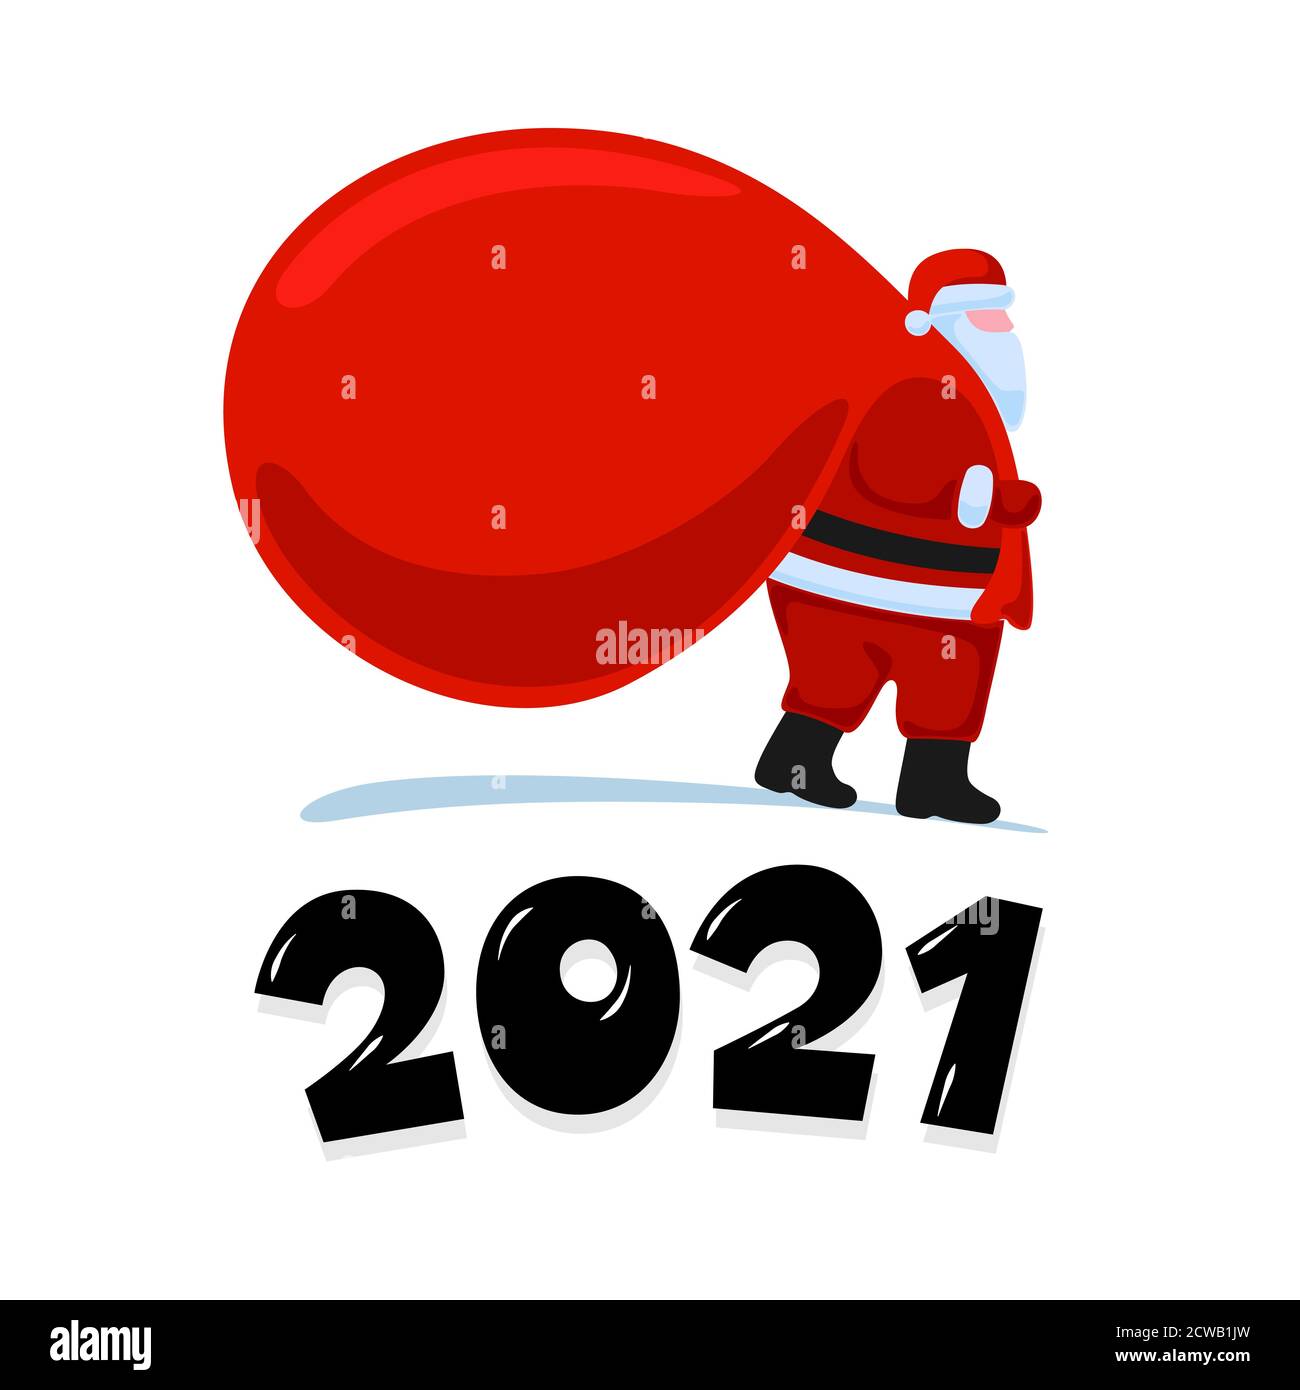 Santa Claus Cartoon Charakter kommen und trägt große schwere Geschenke rote Tasche. Weihnachten und Happy New Year Weihnachtsgruß Karte auf weißem Hintergrund. Vektor eps Feier Kalender Poster Illustration Stock Vektor